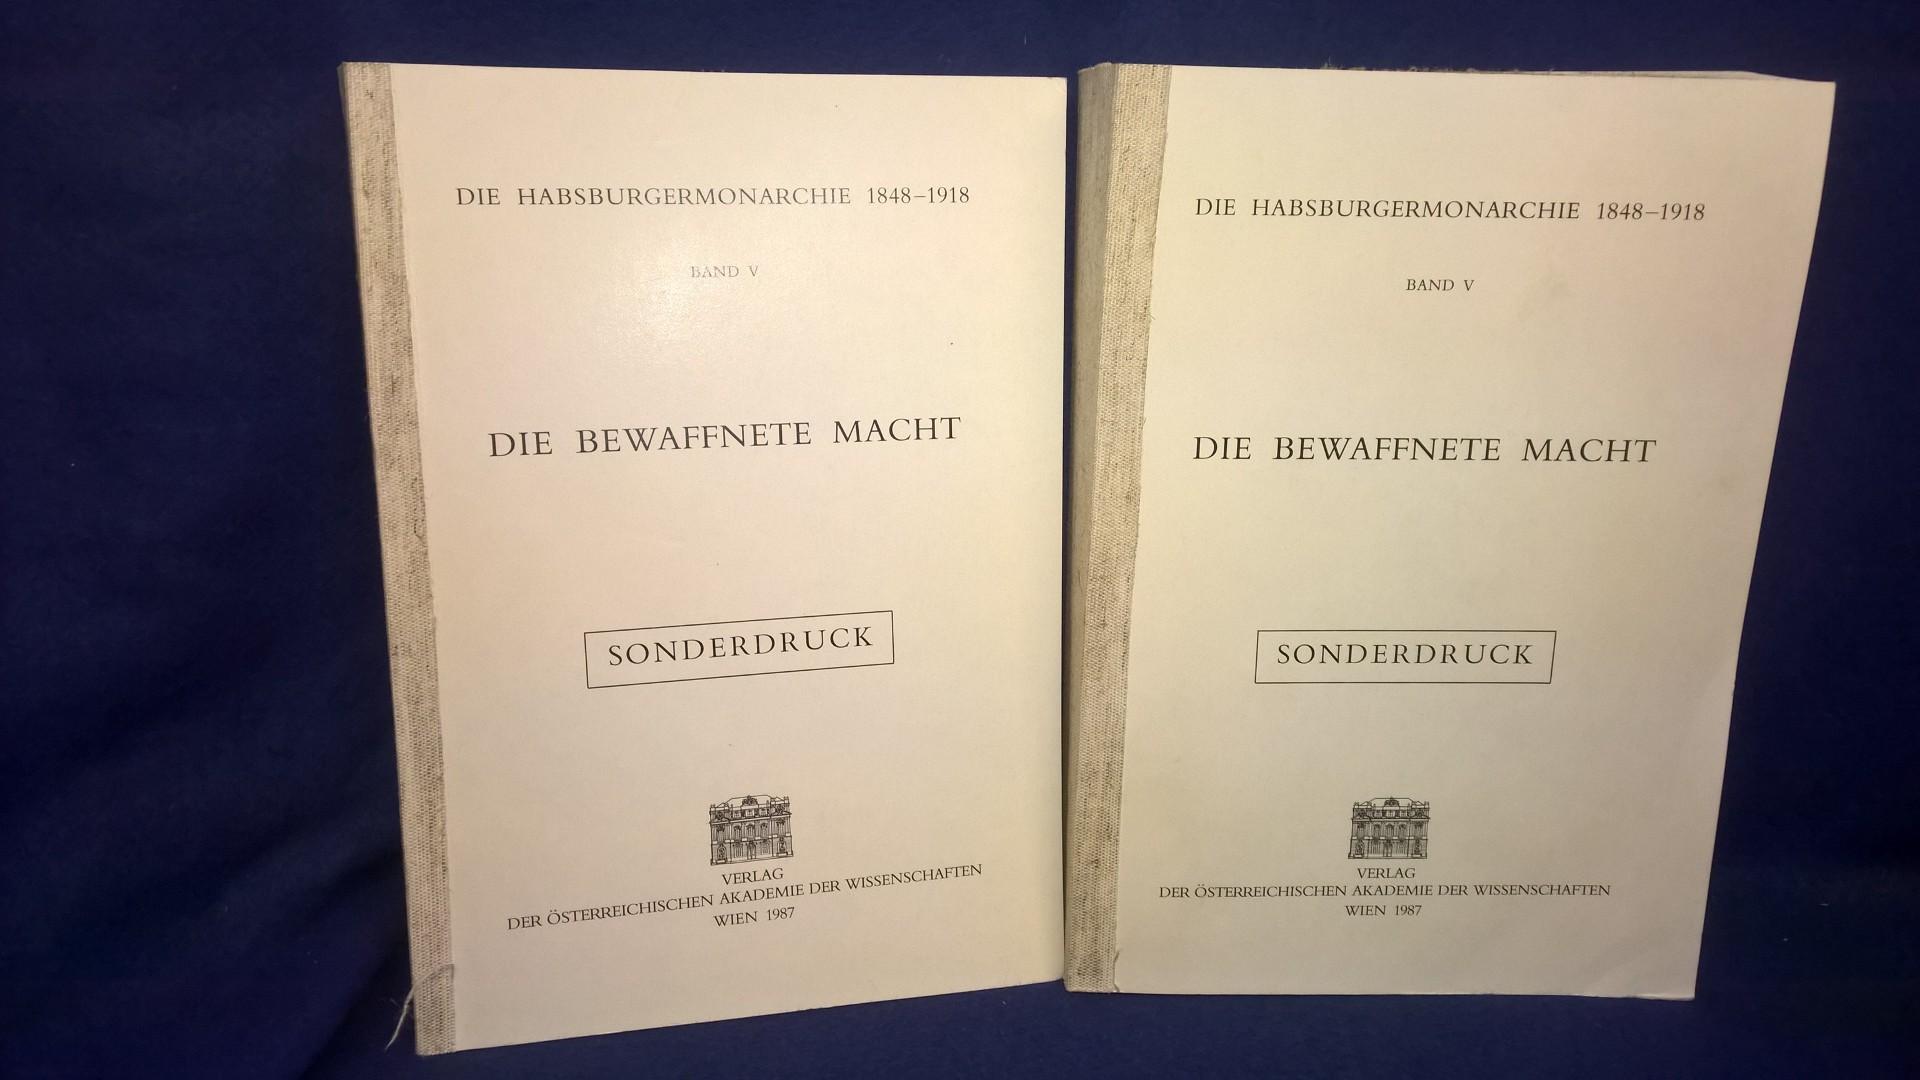  Die Habsburgermonarchie 1848-1918. Band V: Die bewaffnete Macht .